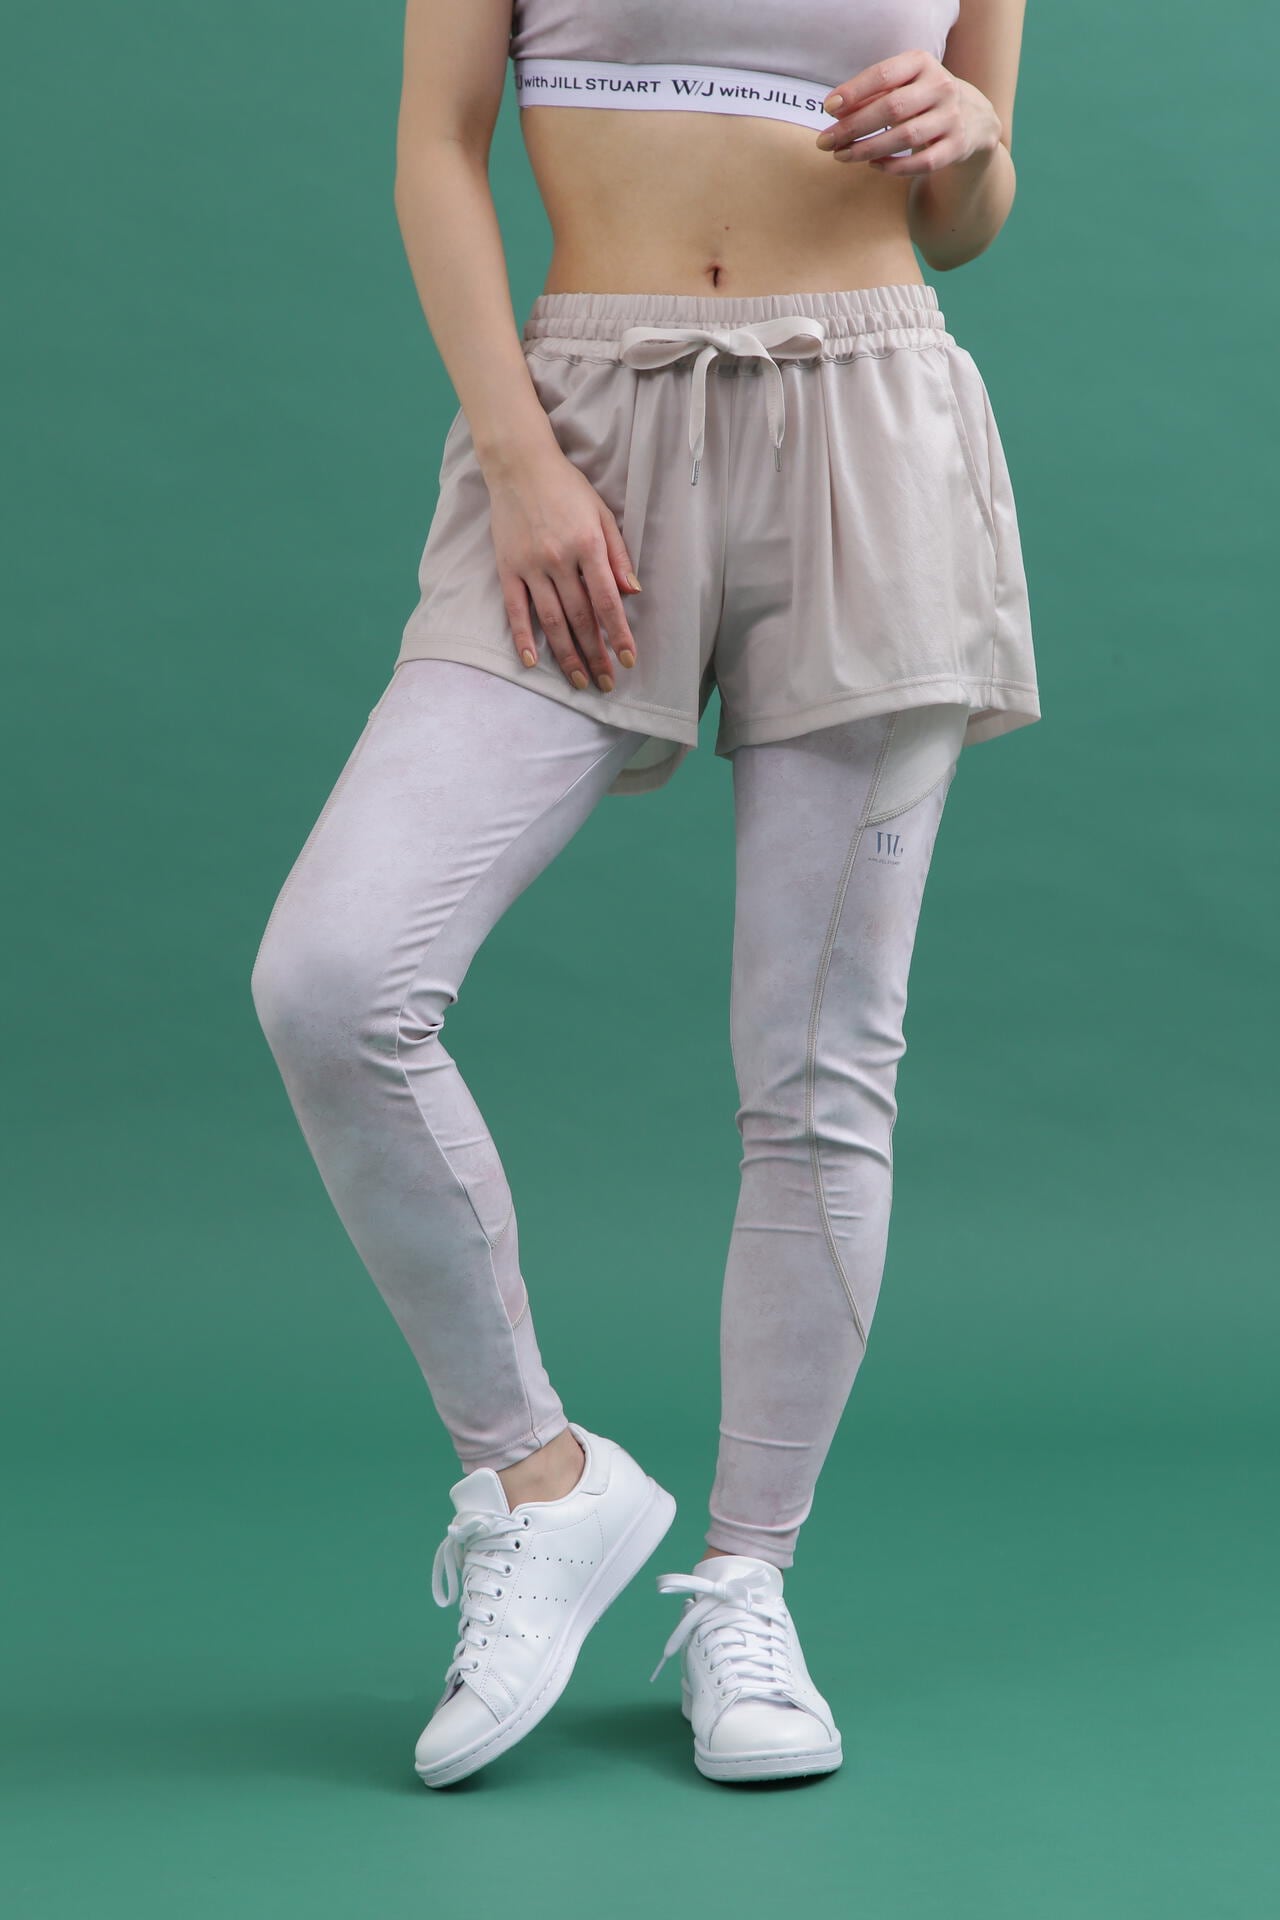 Jill Stuart Women's Bottom Shorts + Yoga Pants Set, NV, Large